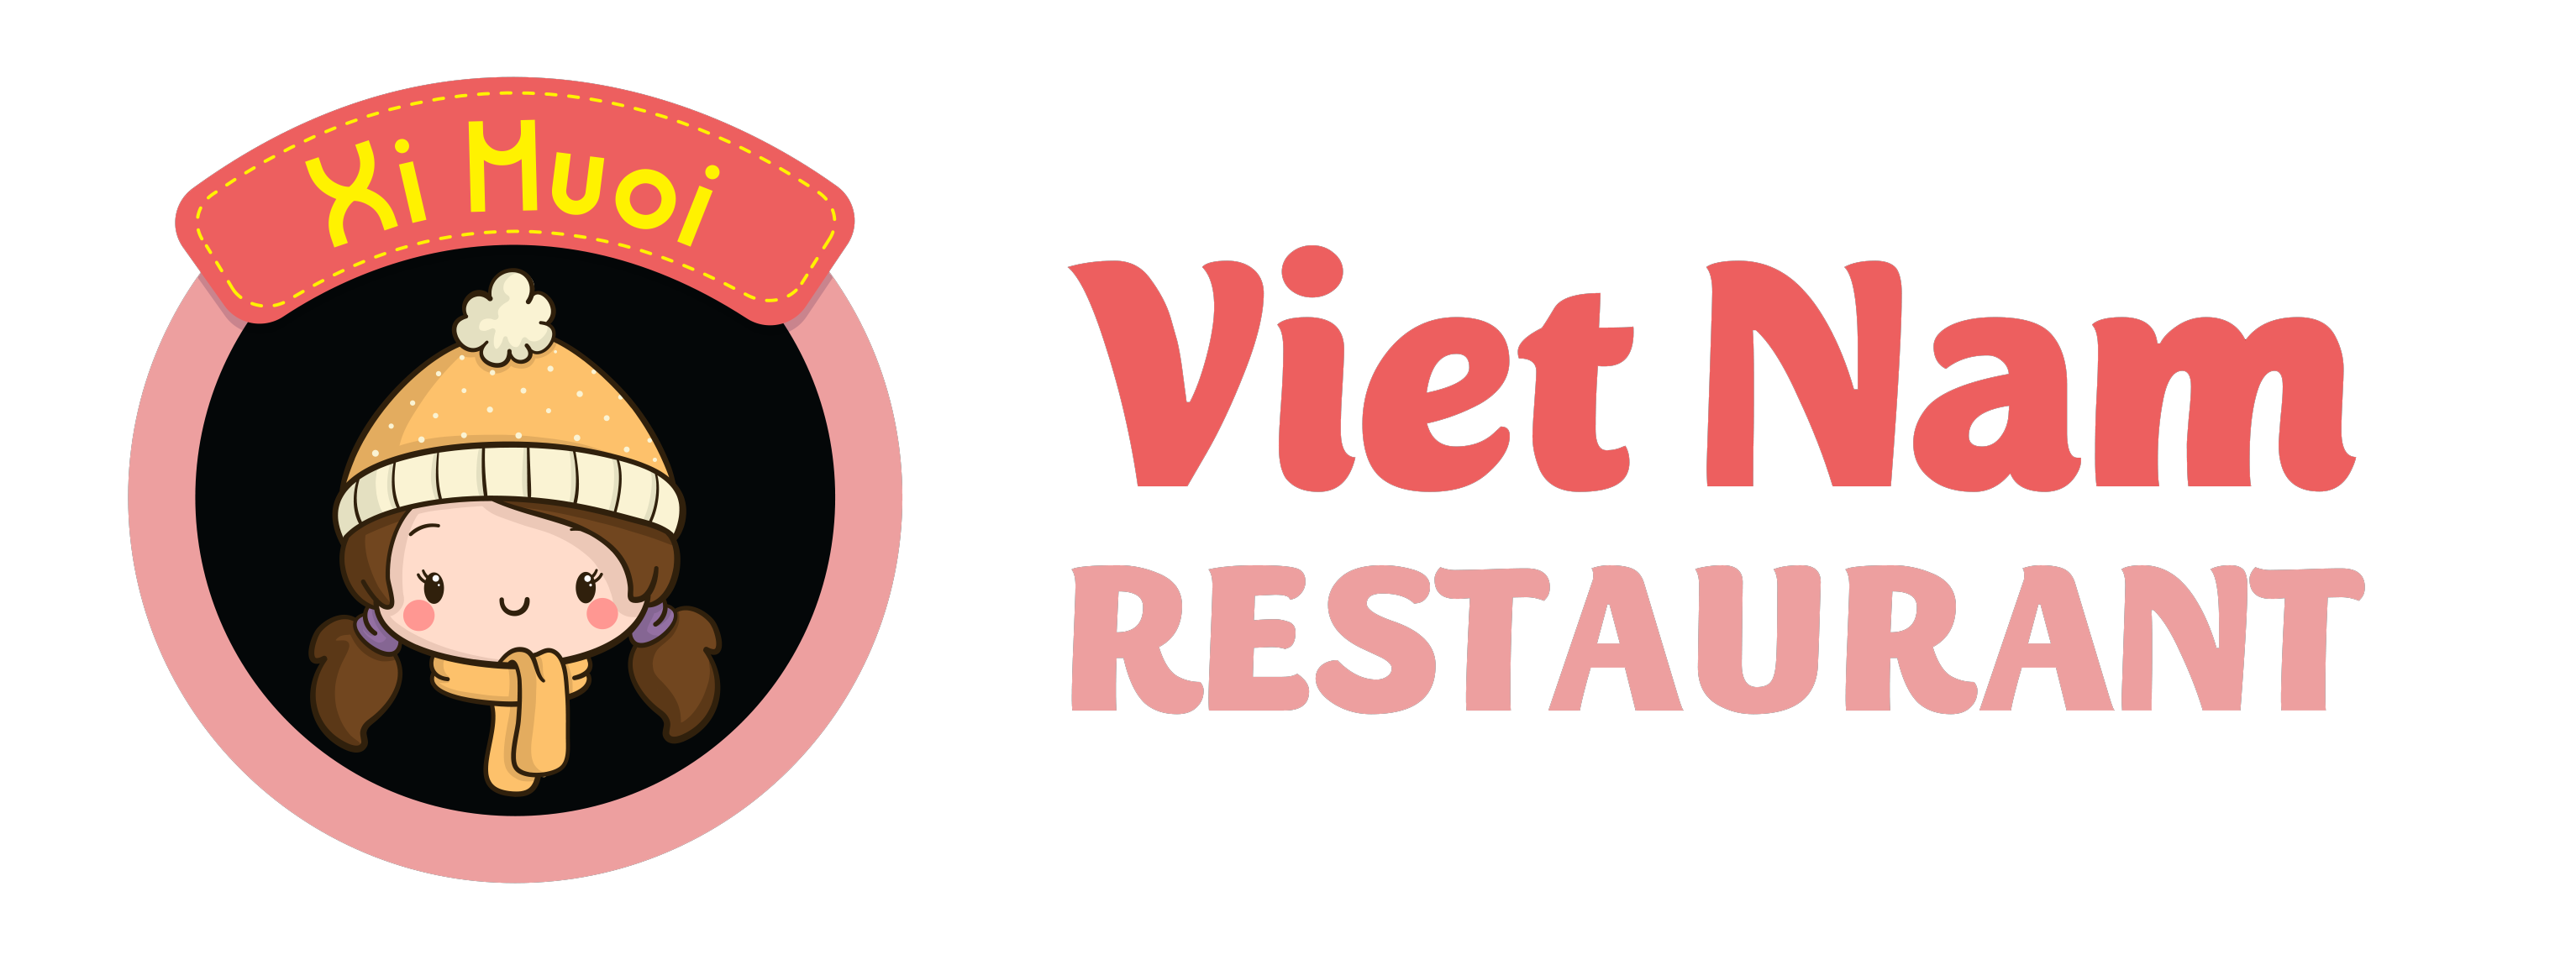 Xi Muoi Restaurant